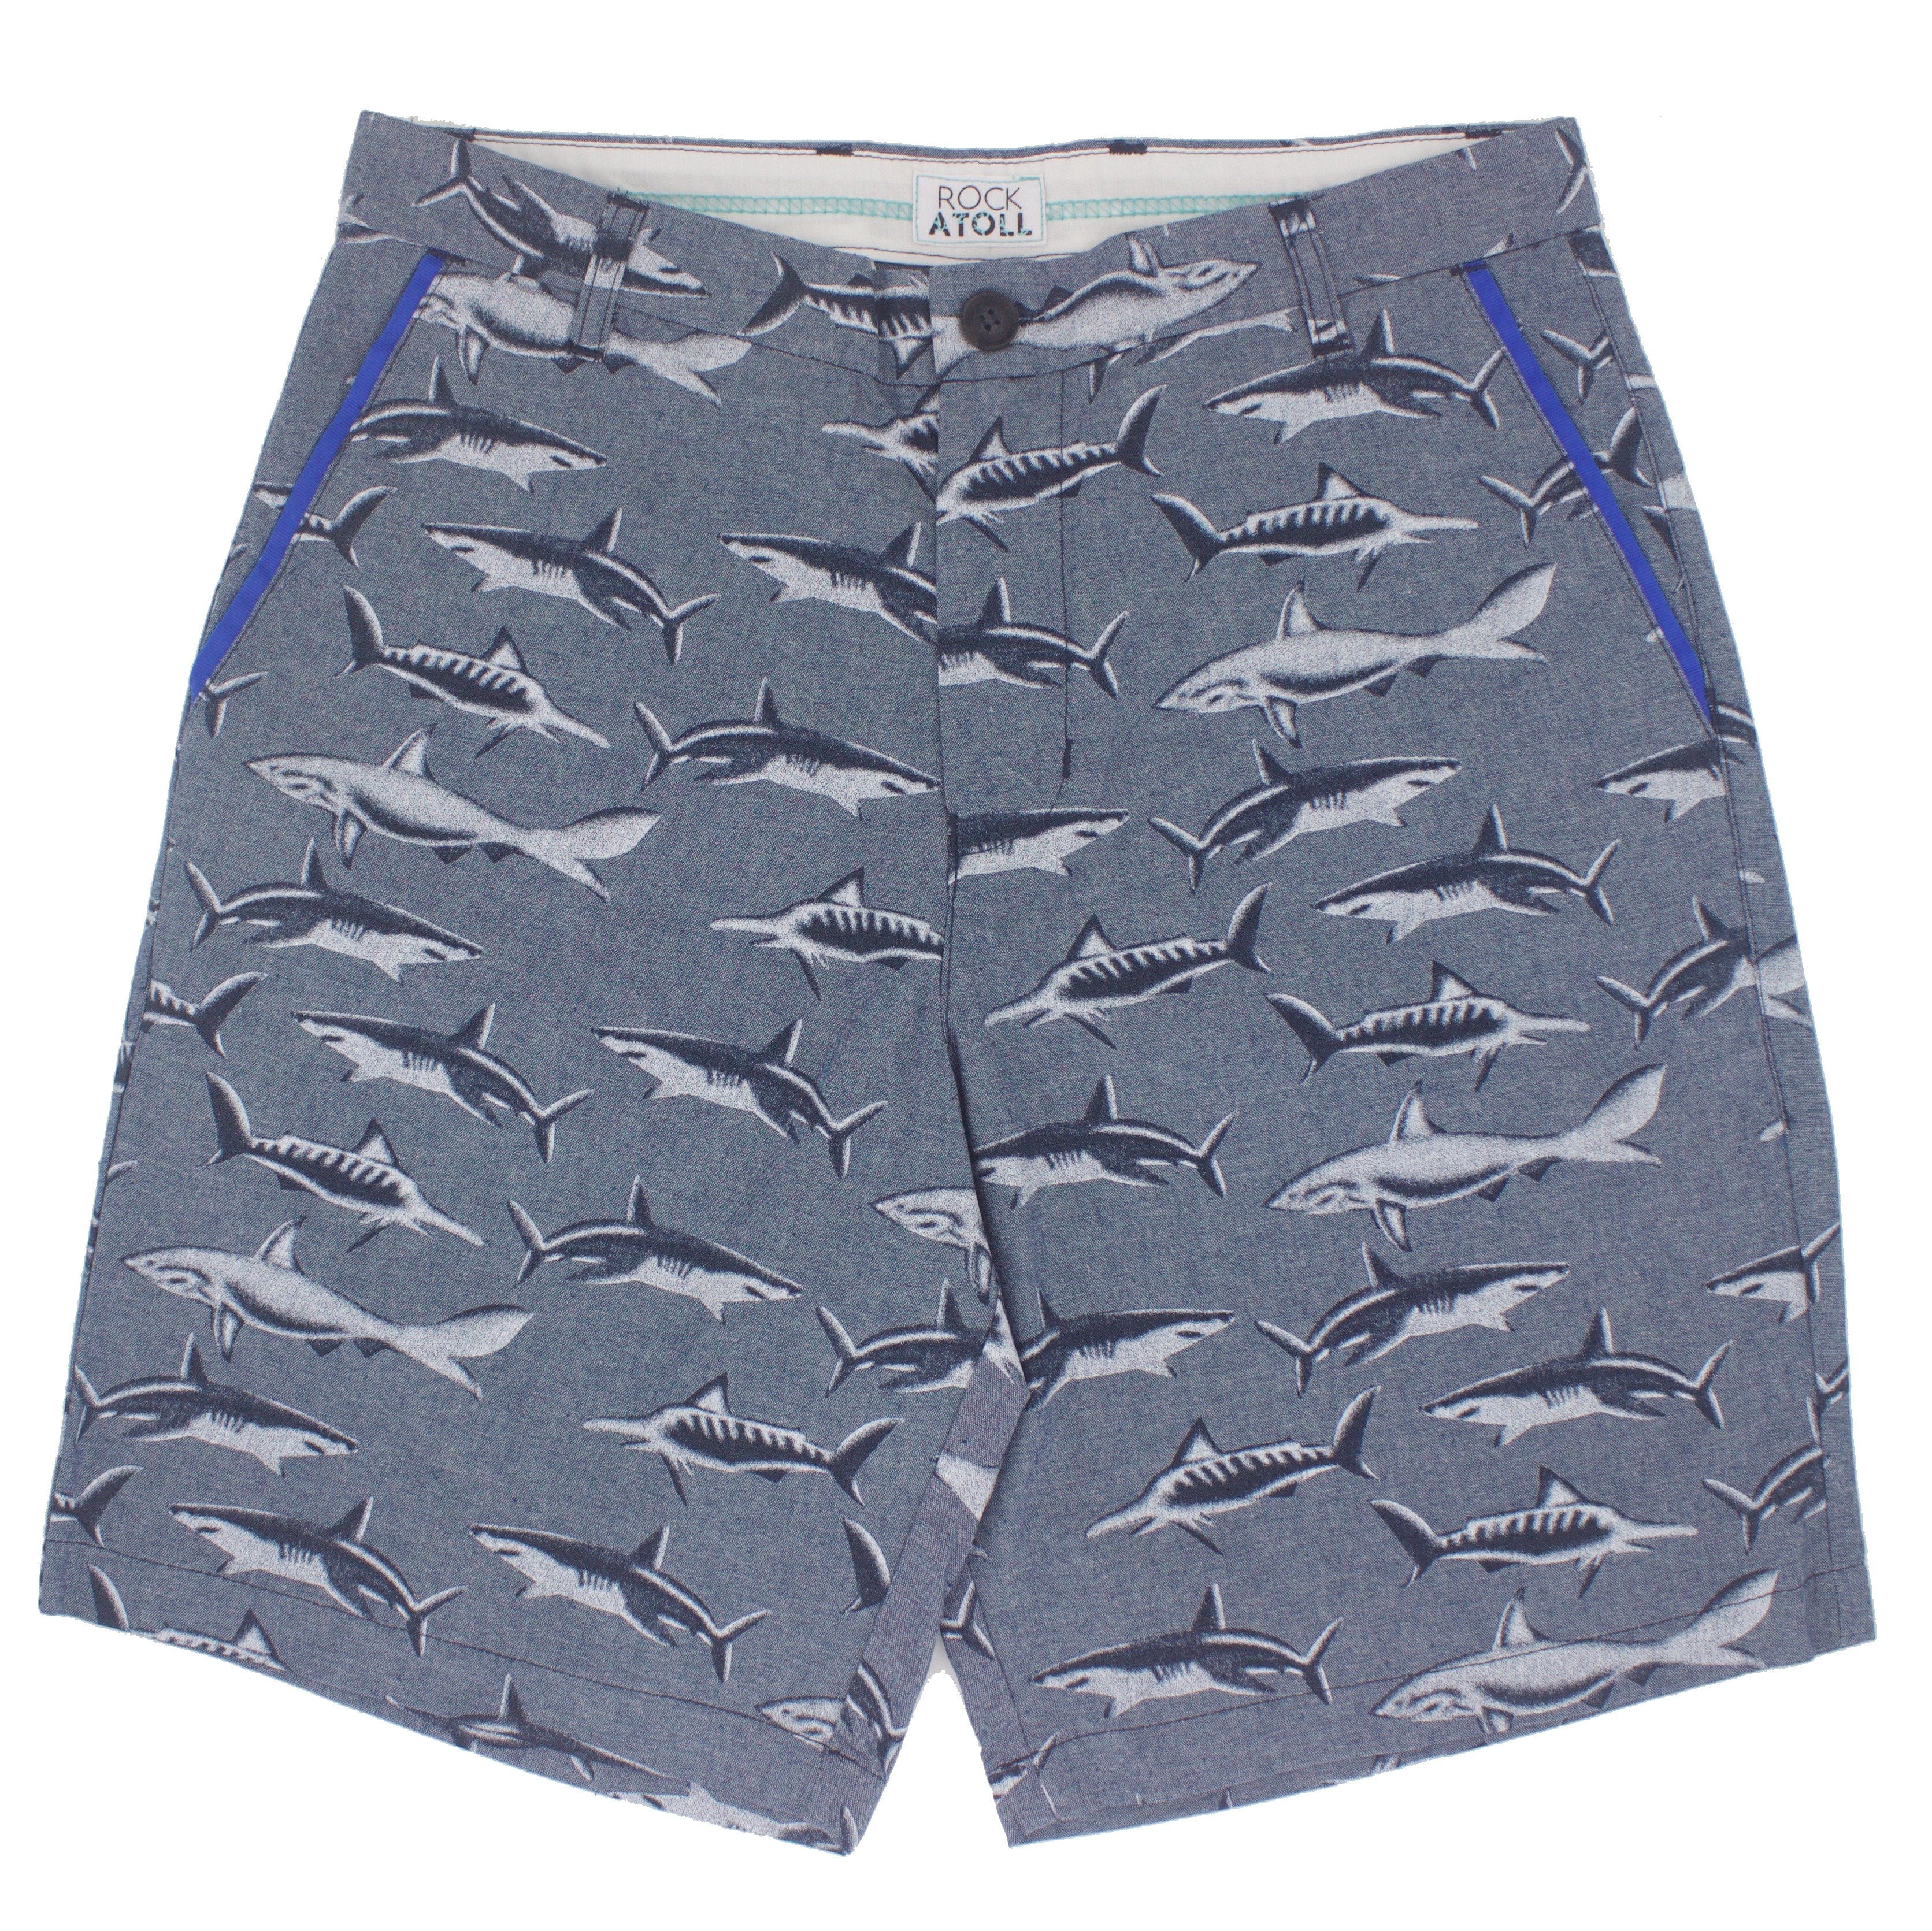 Great White Shark All Over Print Bermuda Shorts for Men